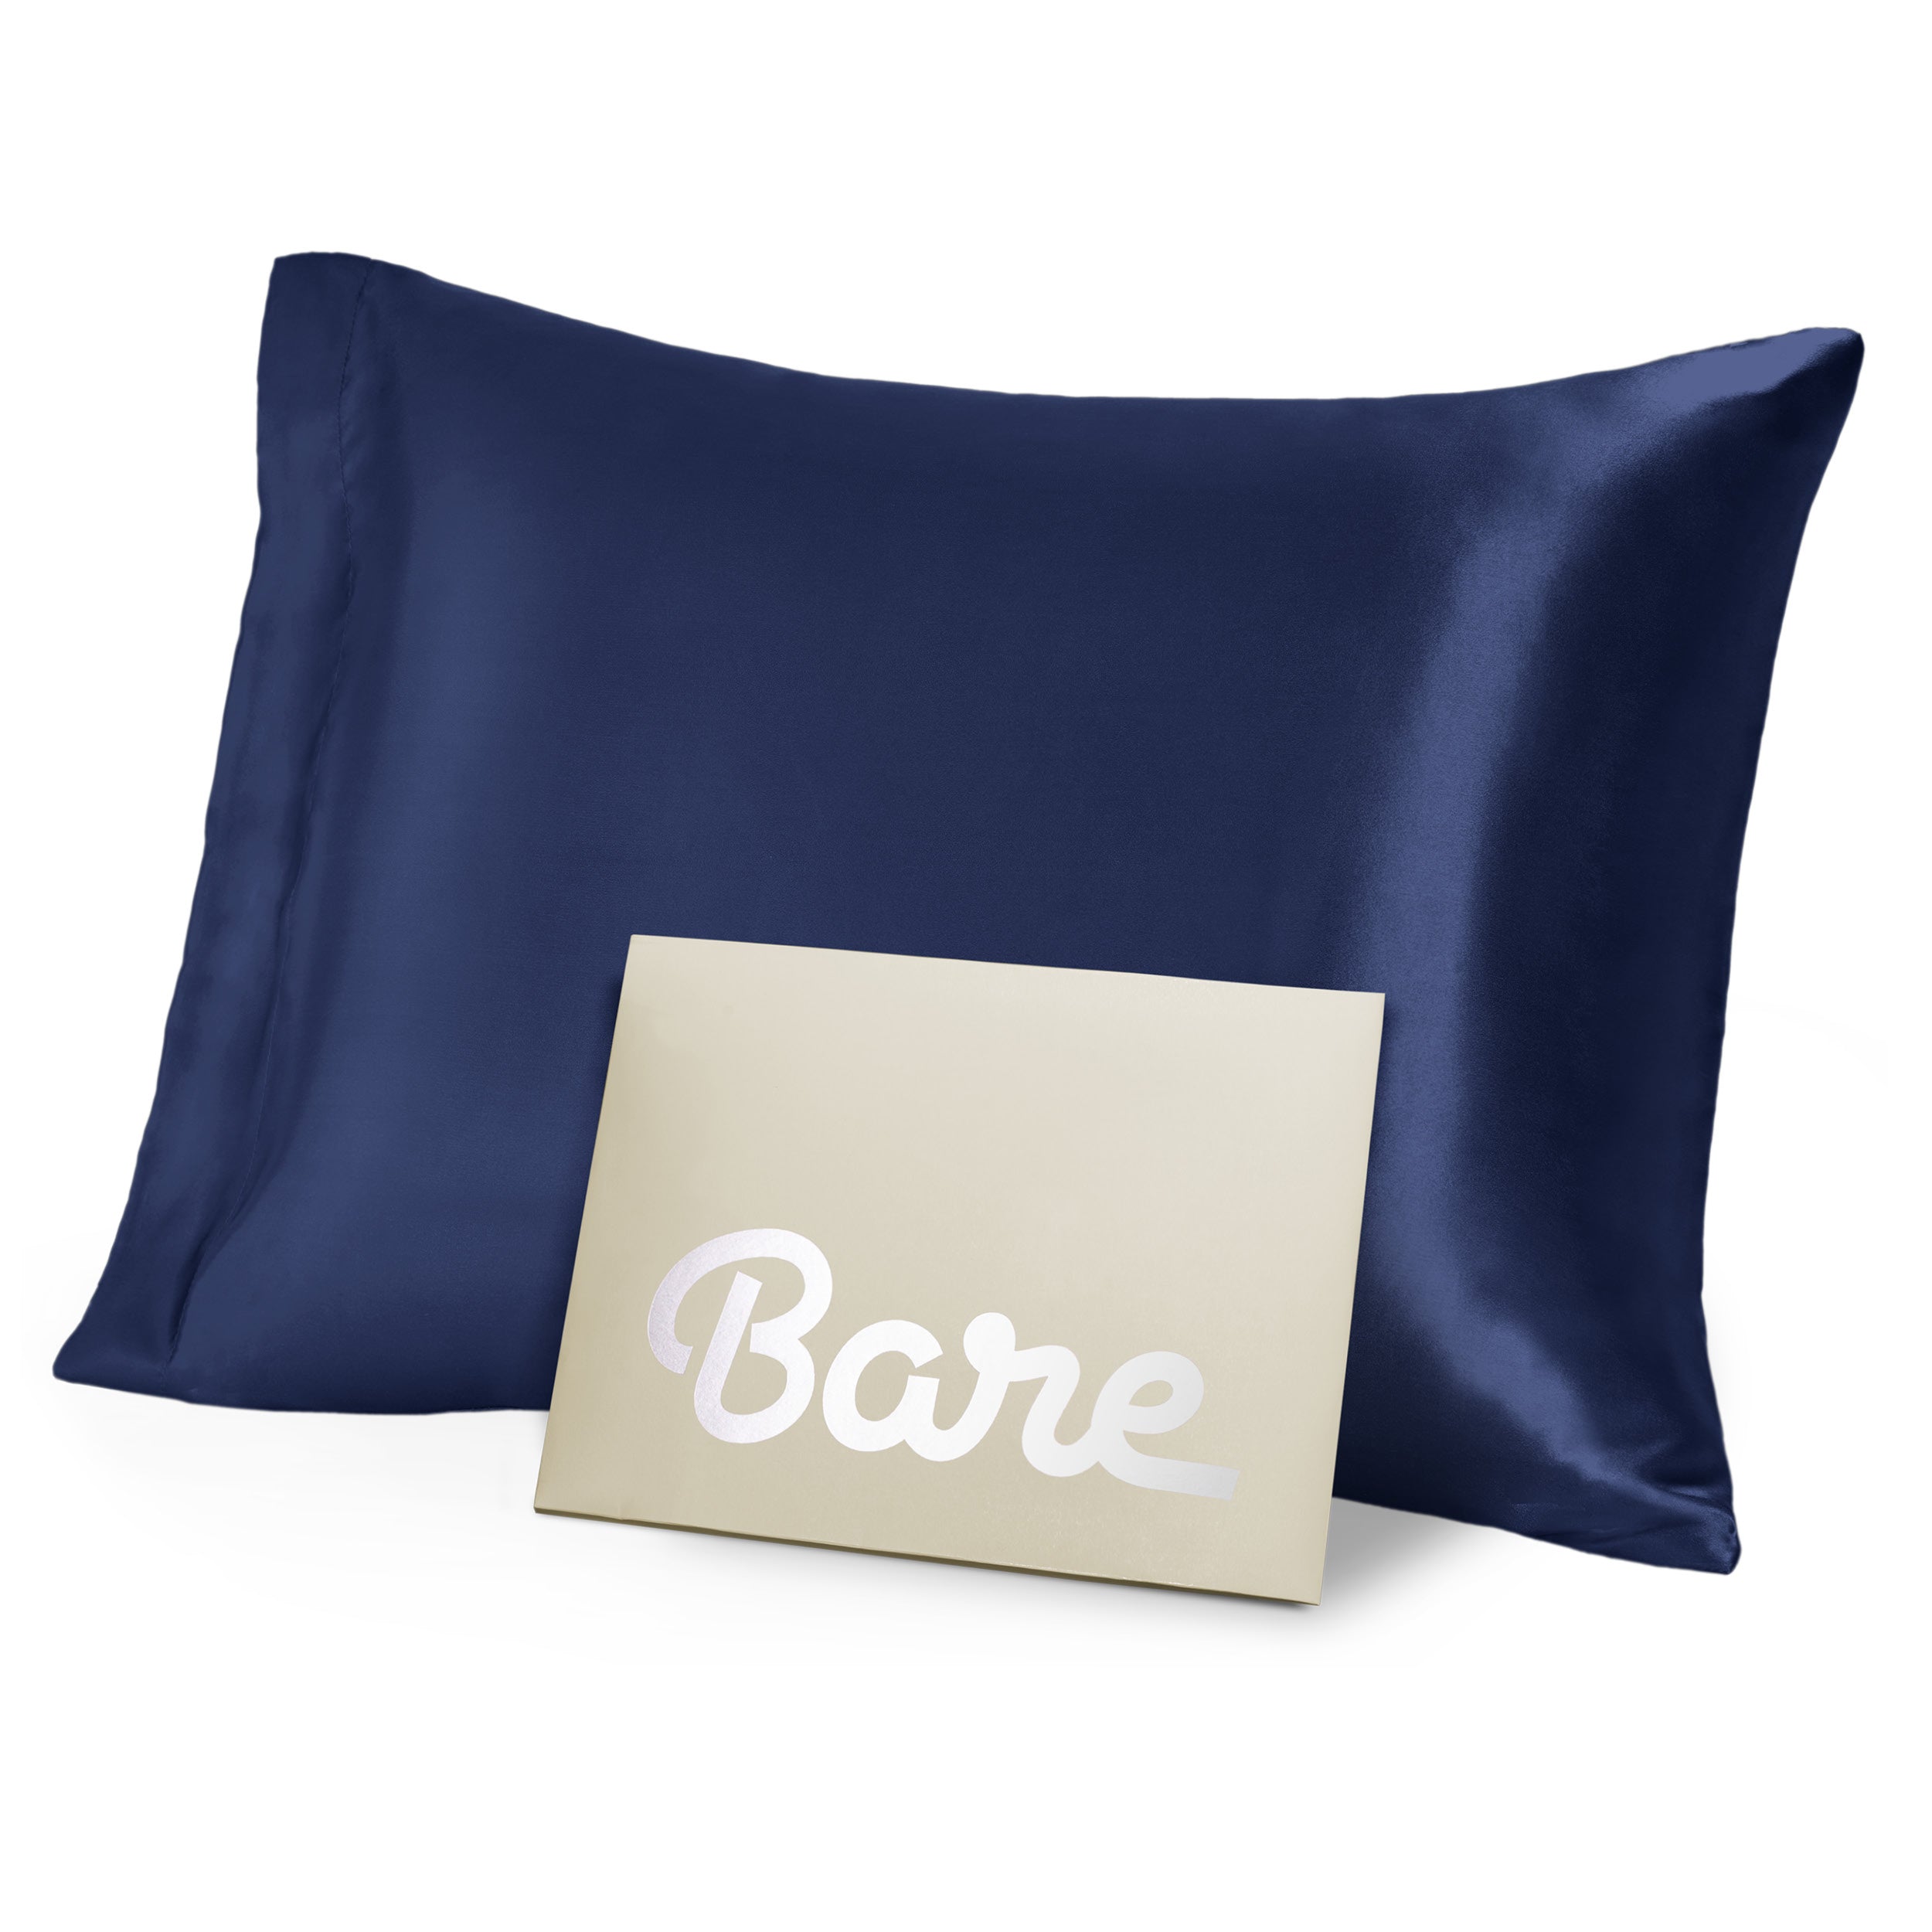 A blue mulberry silk pillowcase on a pillow